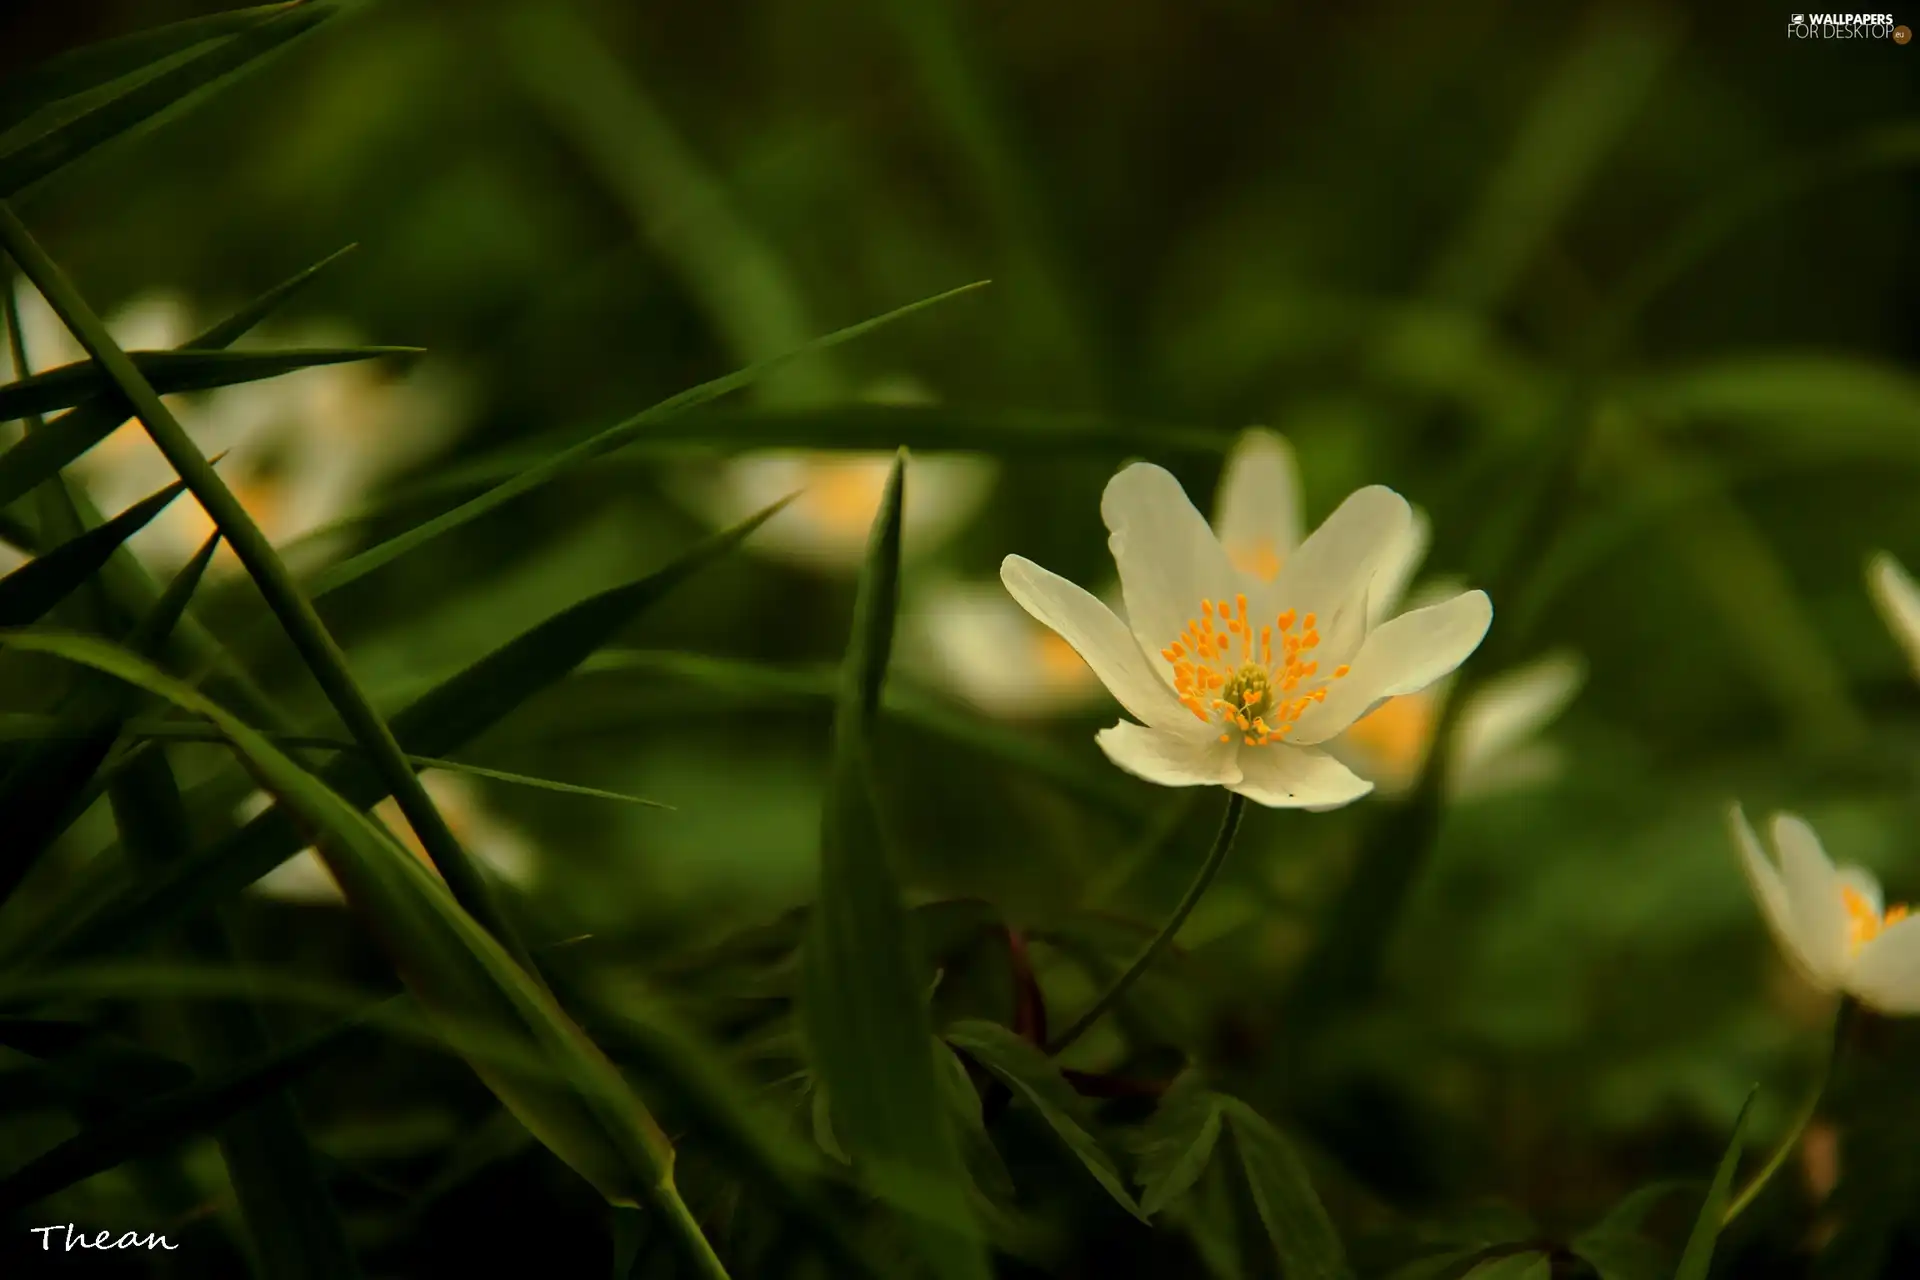 White, anemone